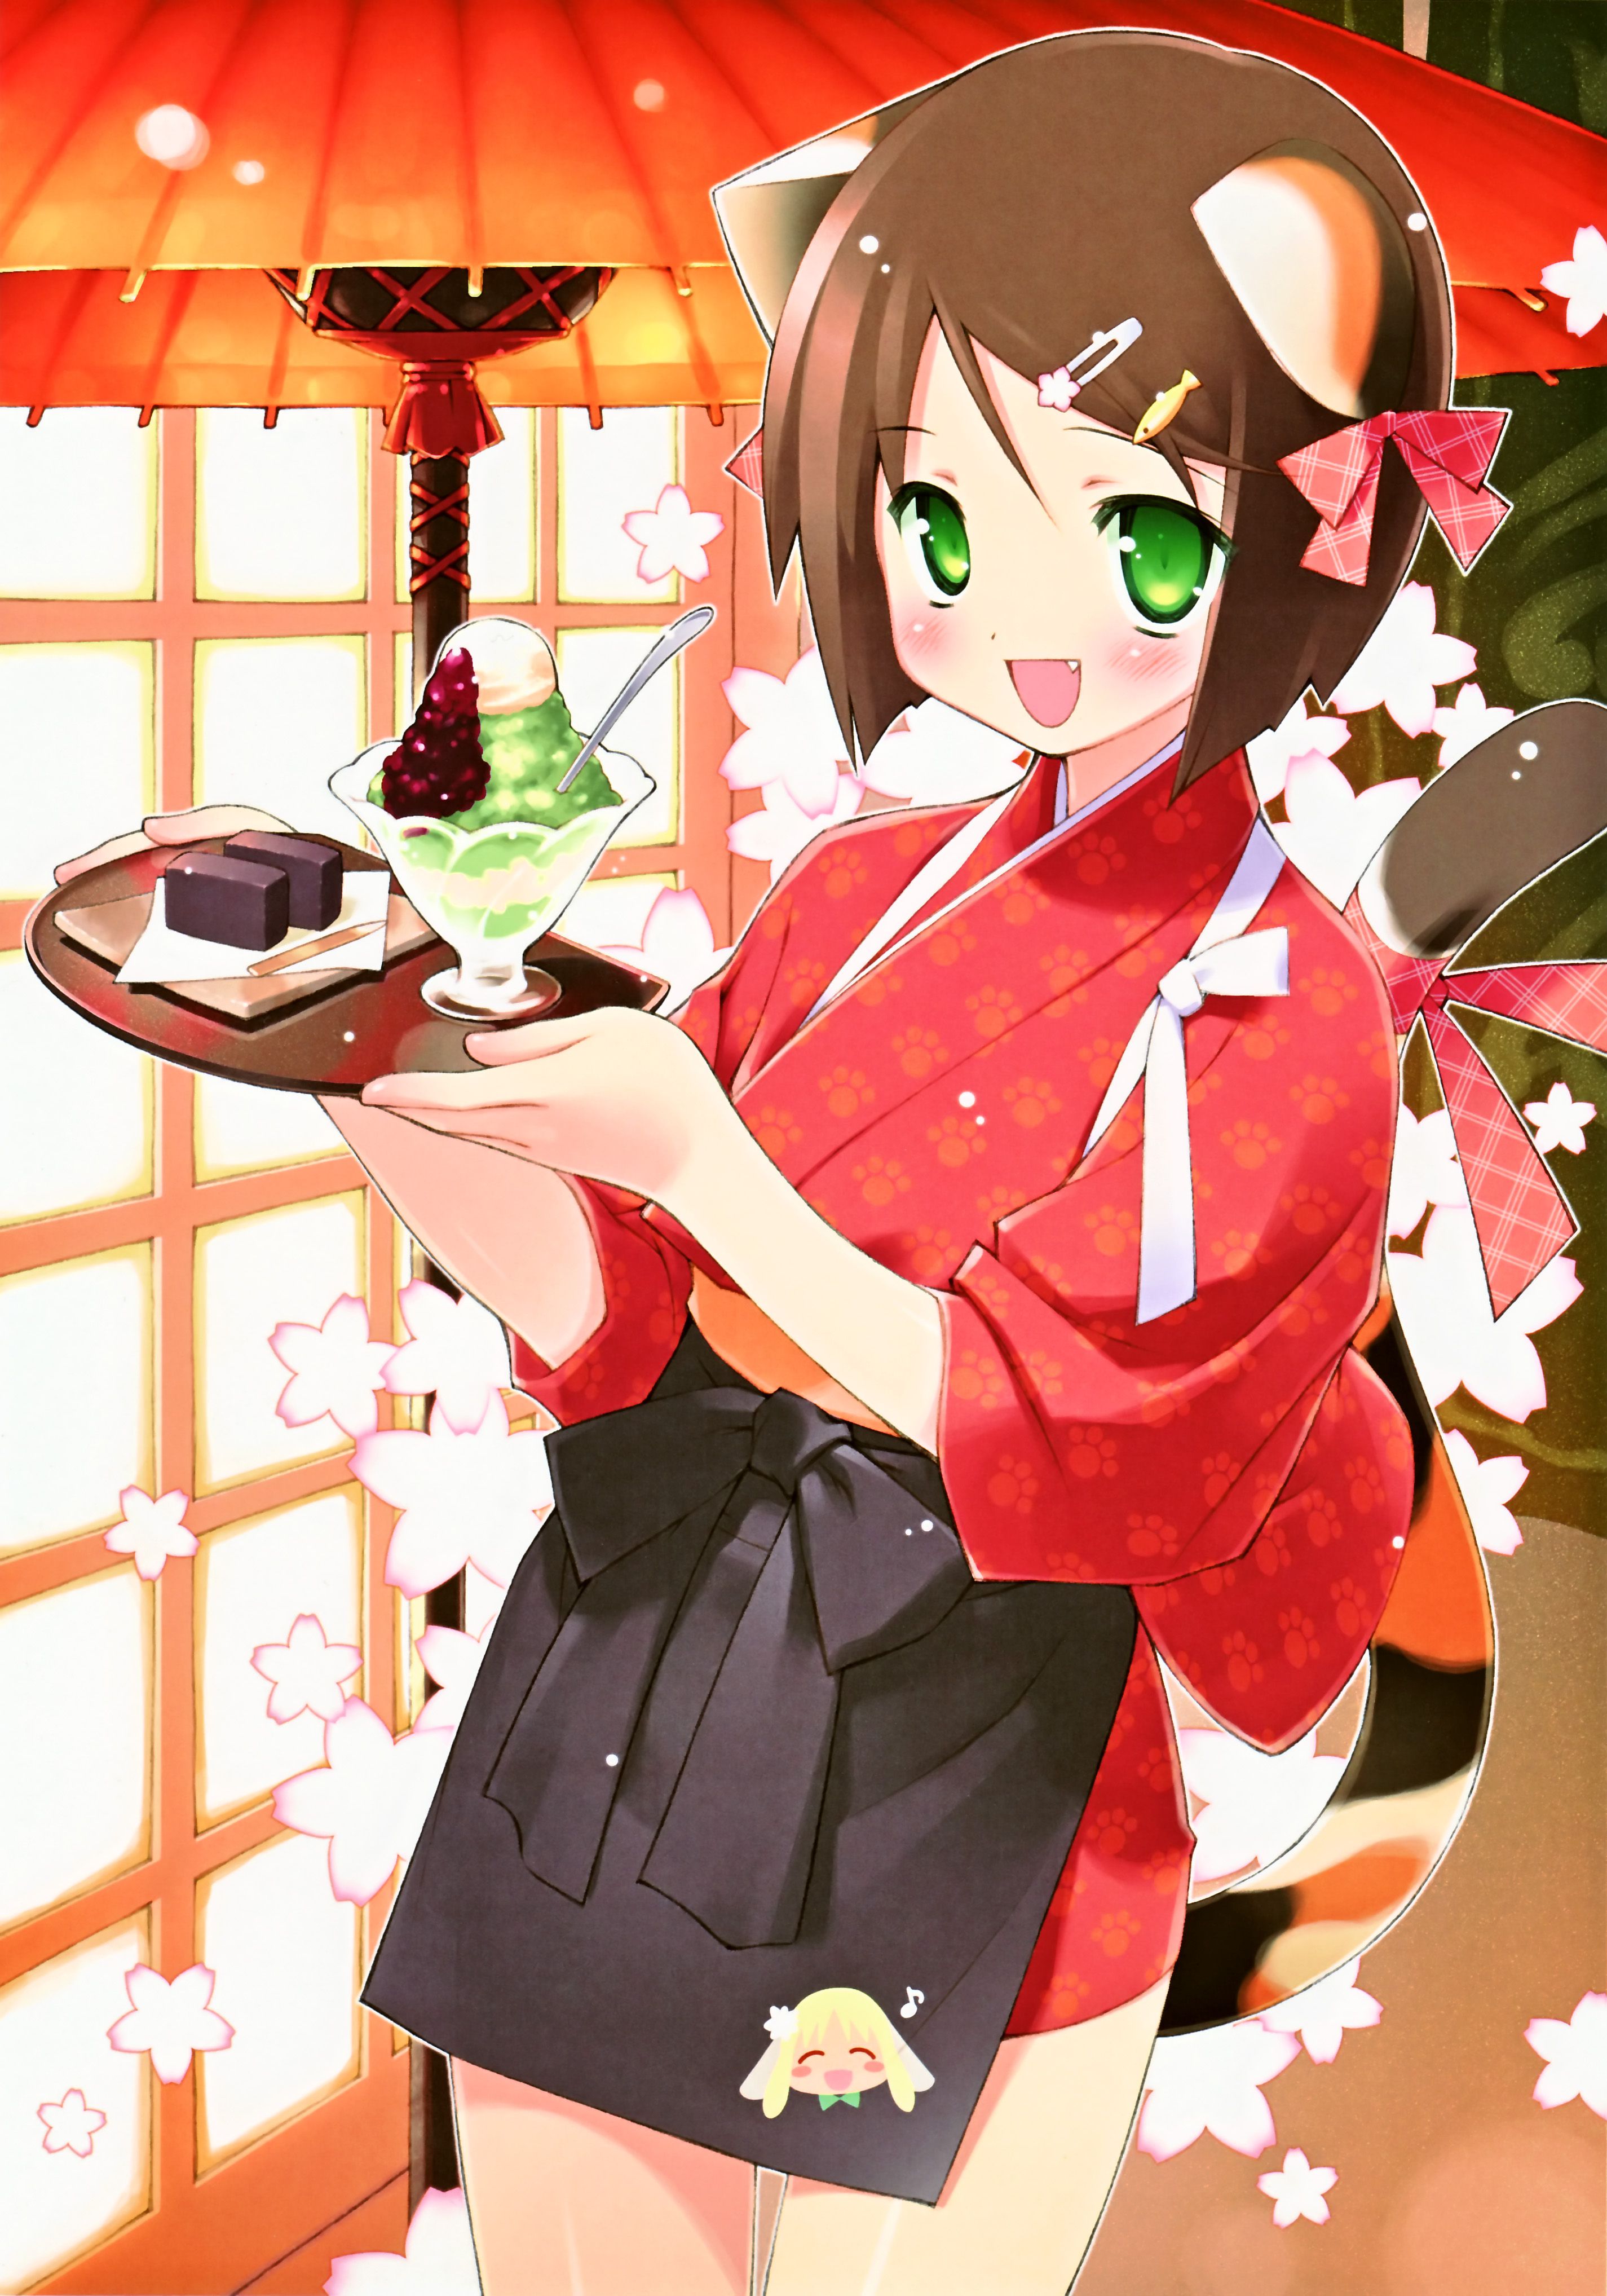 Cute kimono! Erotic image, please w 11 1